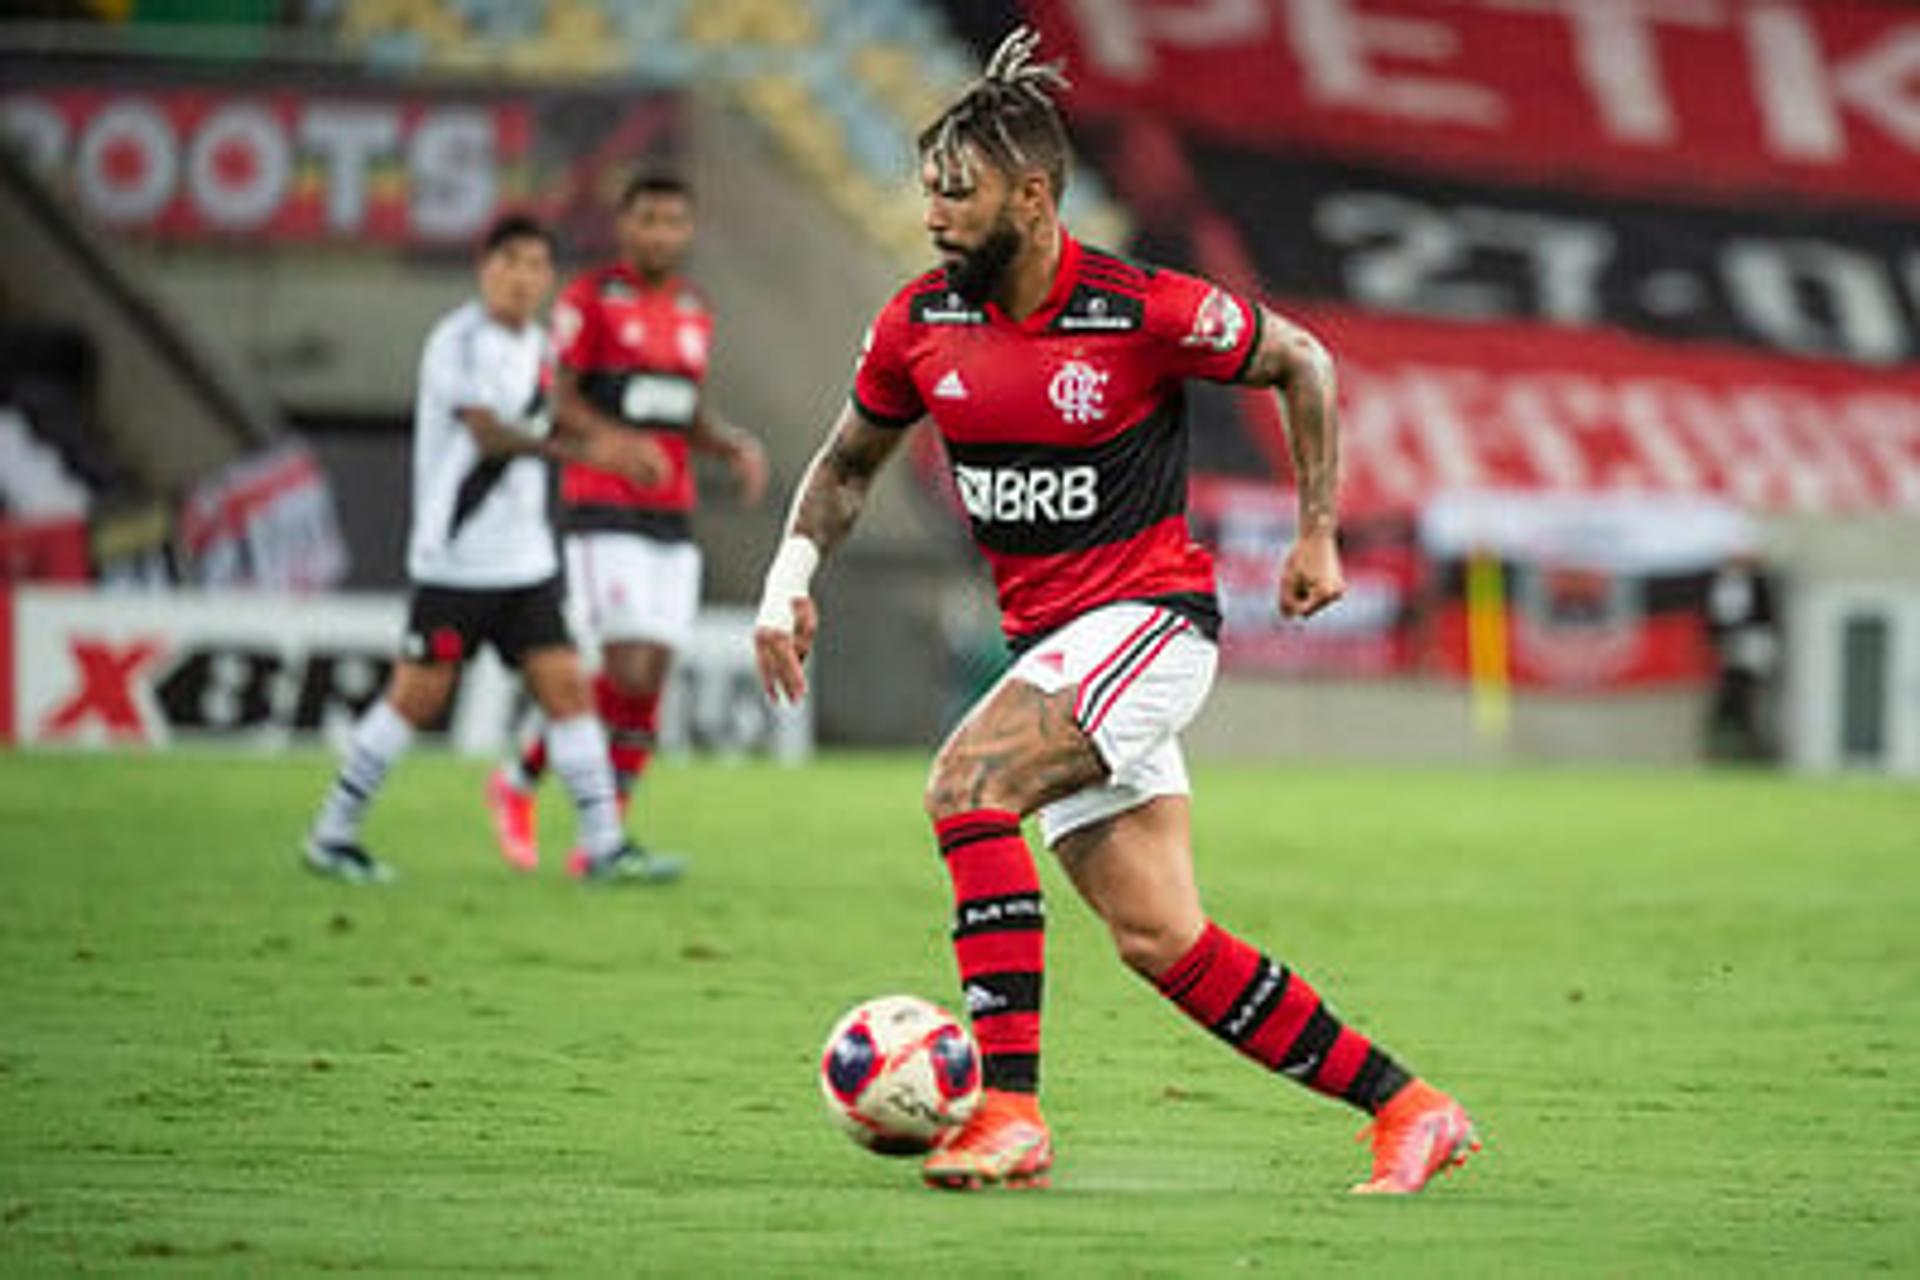 Gabigol - Flamengo x Vasco